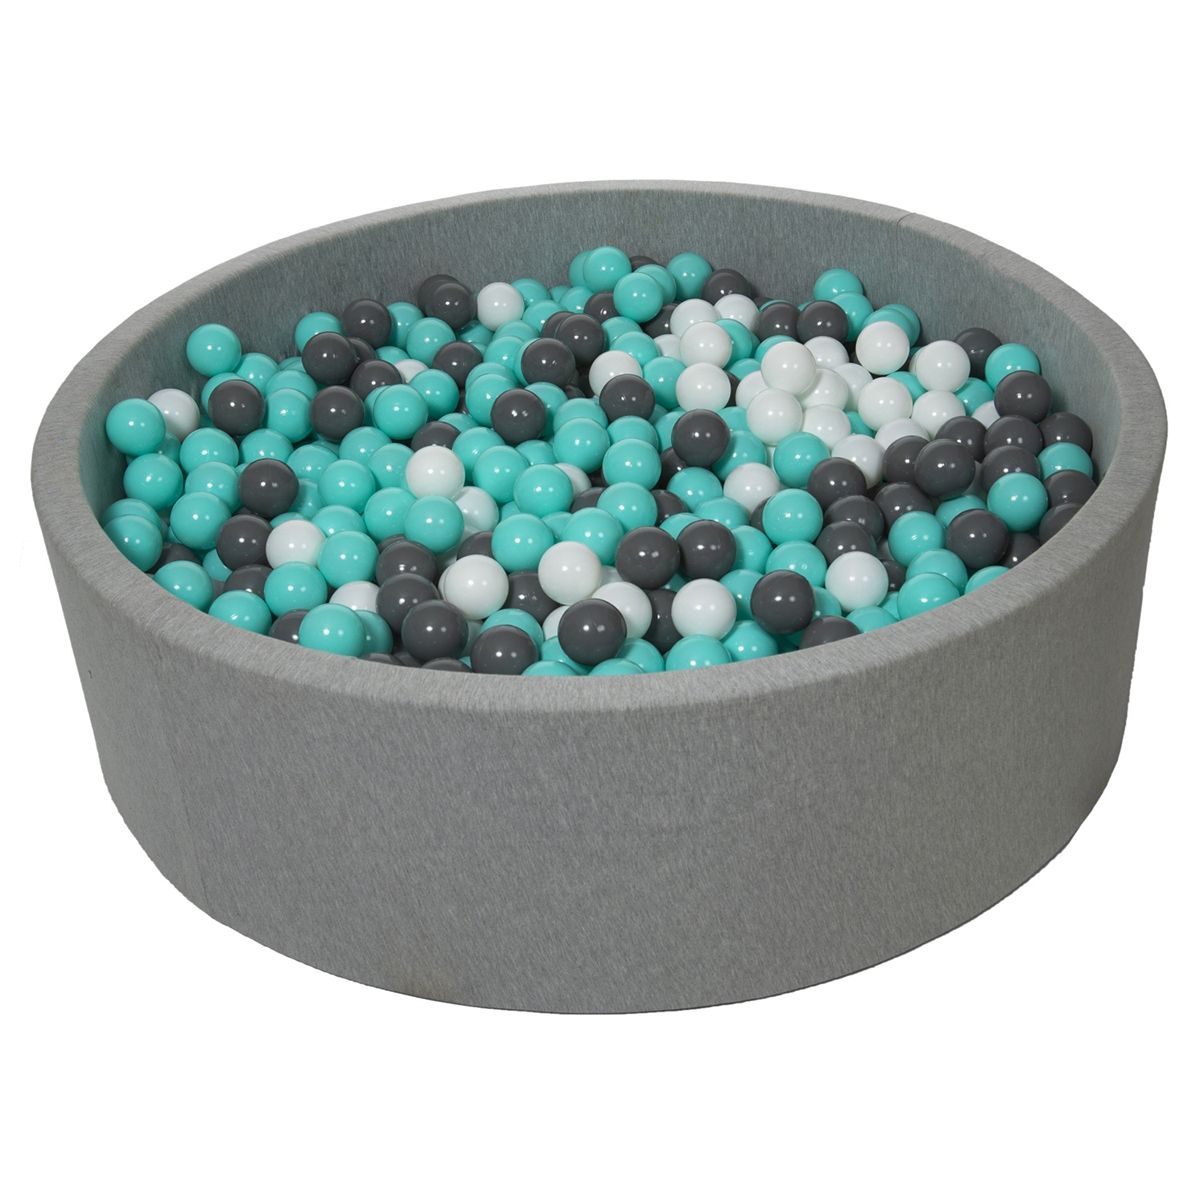  Piscine à balles pour enfant, diamètre env.125 cm + 1200 balles blanc, gris, turquoise